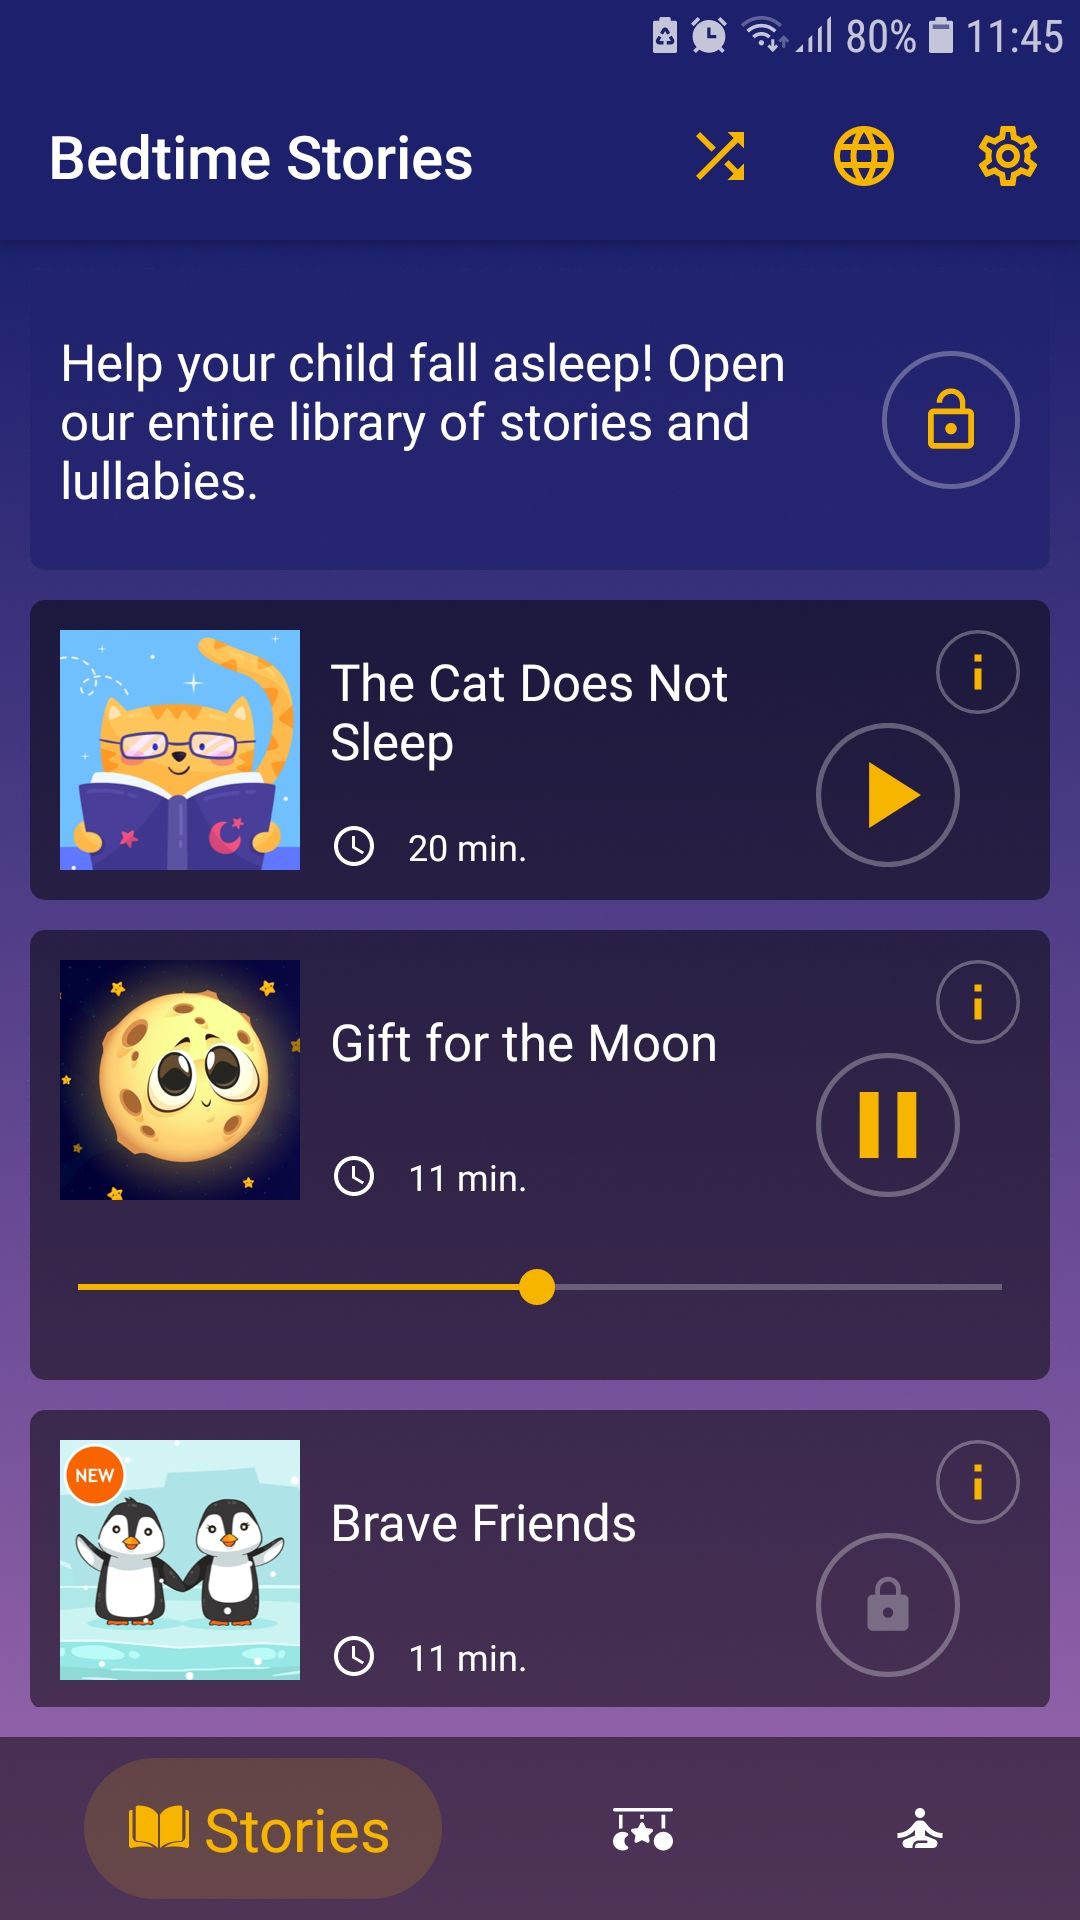 Bedtime Stories mobile kids sleep app